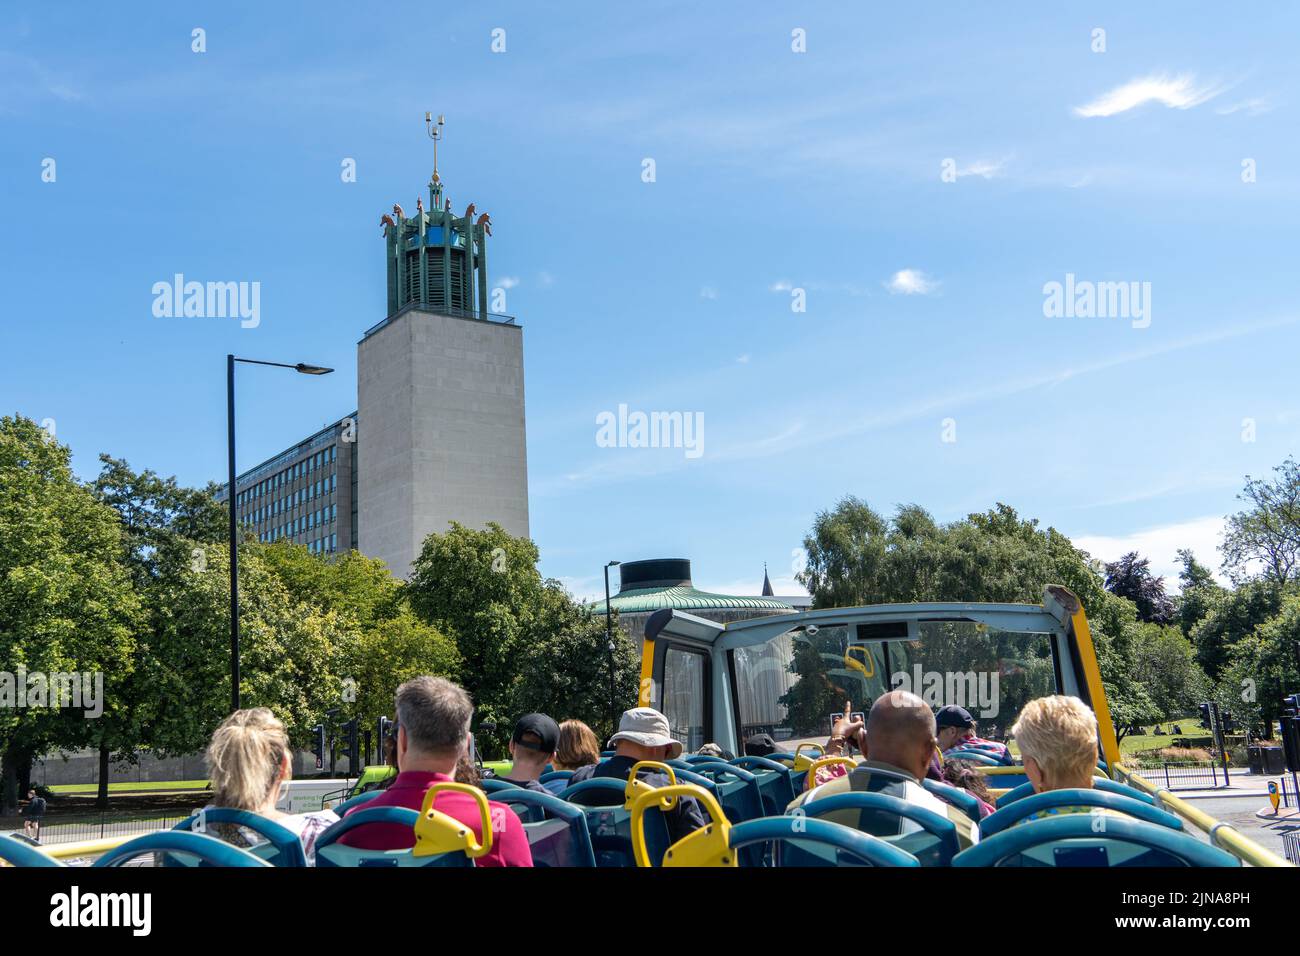 Reisen Sie durch die Stadt Newcastle Upon Tyne, Großbritannien mit dem Toon Tour Sightseeing Bus, an einem sonnigen Tag. Blick auf das Newcastle Civic Centre. Stockfoto